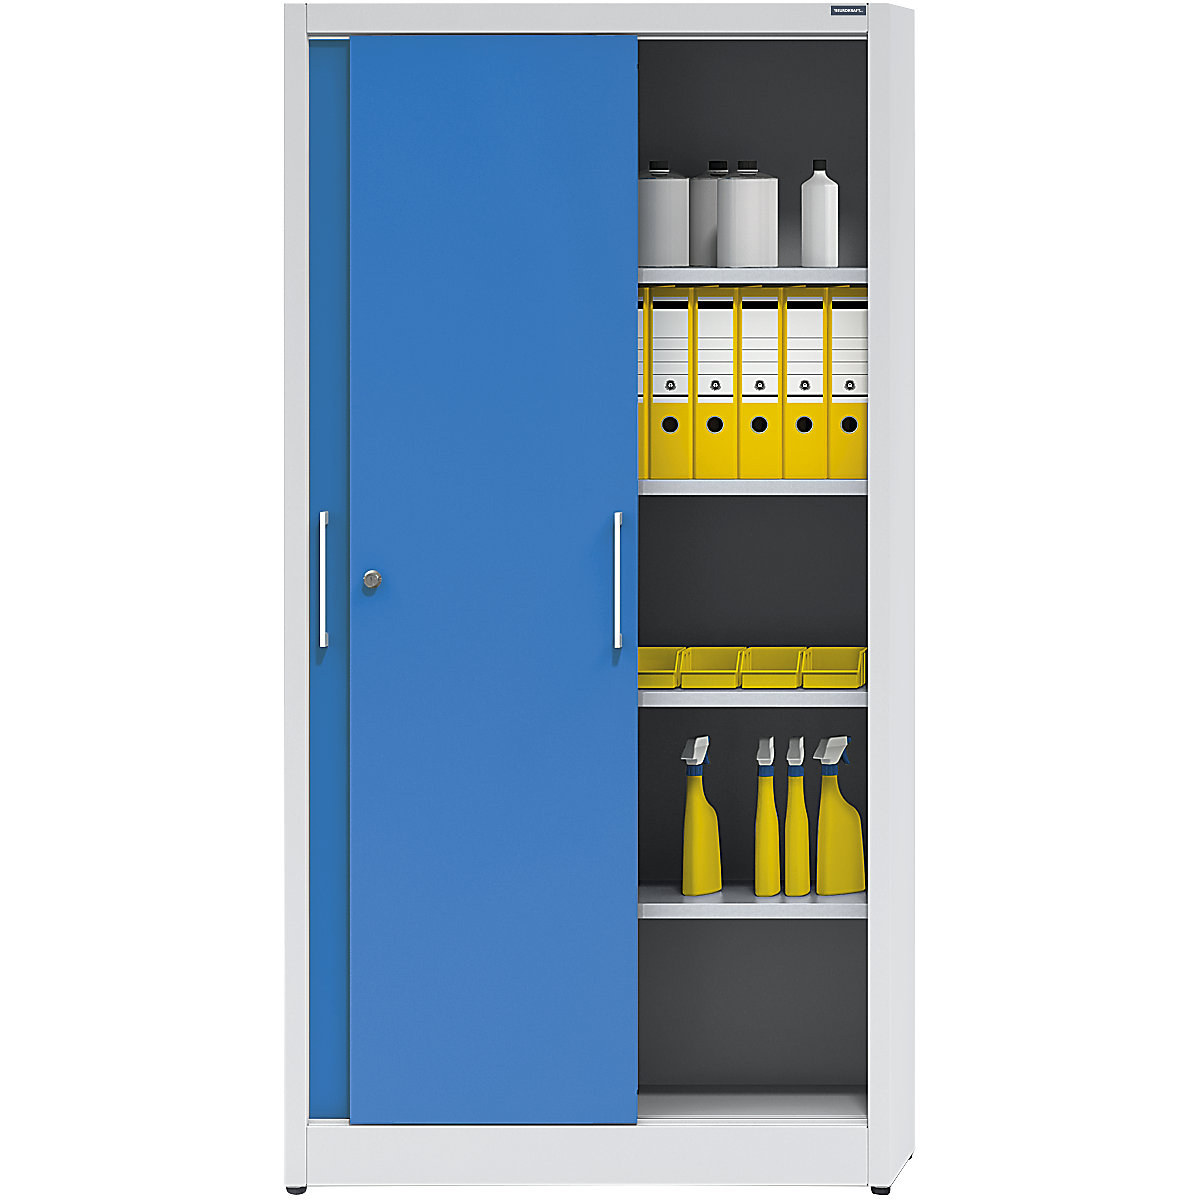 Sliding door cupboard, height 1950 mm – eurokraft pro, with 4 shelves, width 1000 mm, depth 500 mm, doors in light blue RAL 5012-6